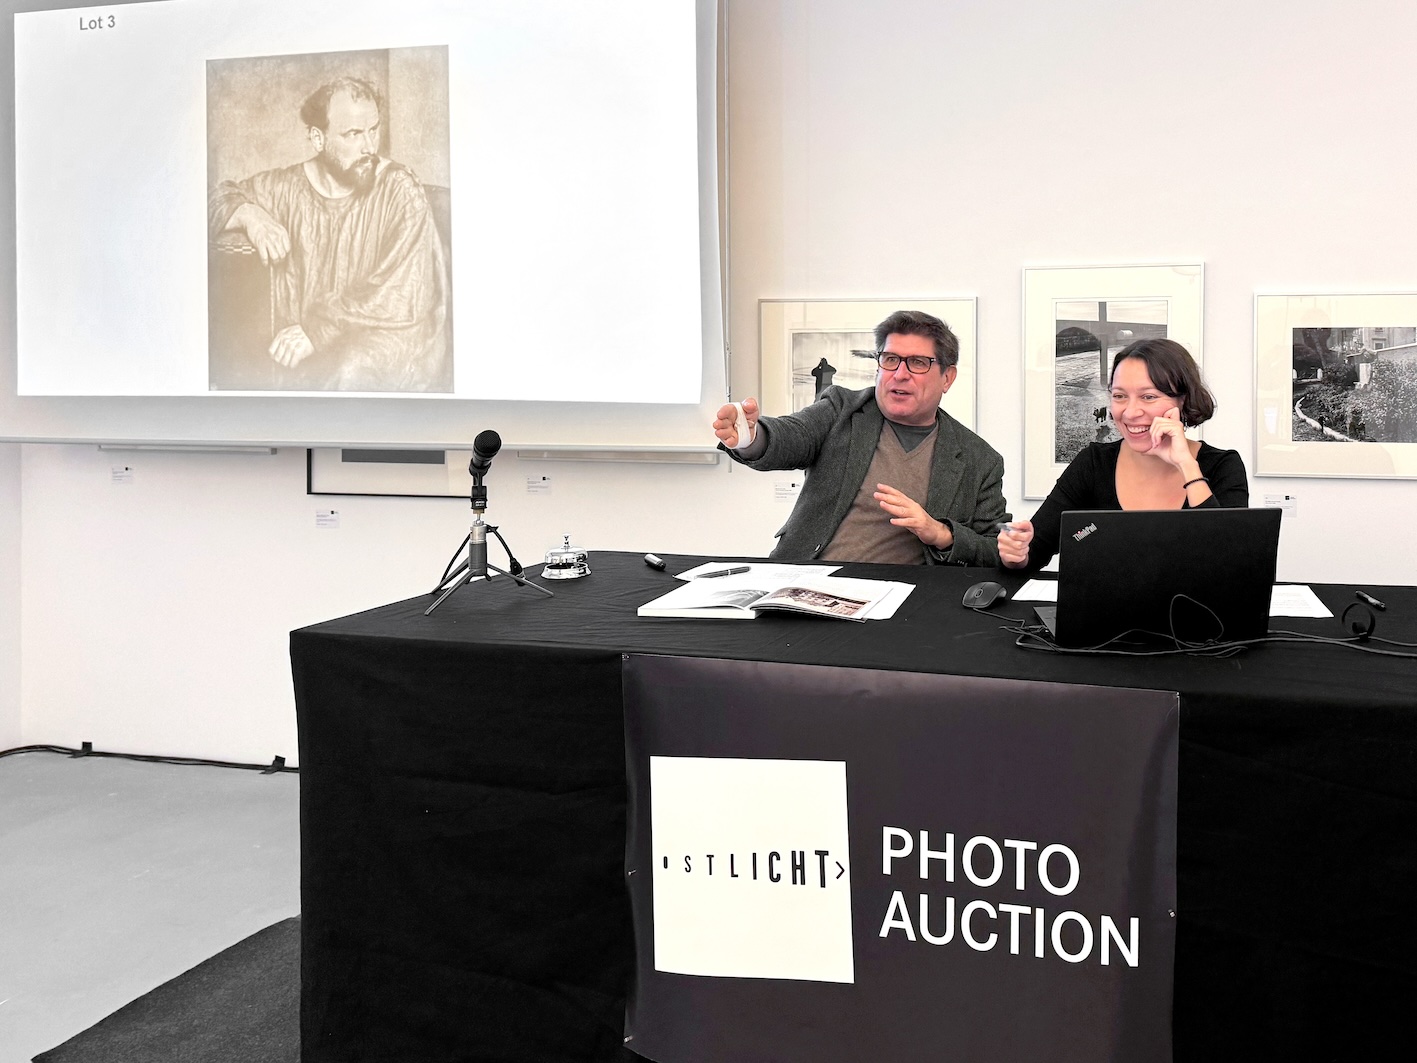 Bei der Auktion: Auktionator Nikolaus Schauerhuber und Co-Auktionatorin Sanela Rezakhani (c) OstLicht Photo Auction